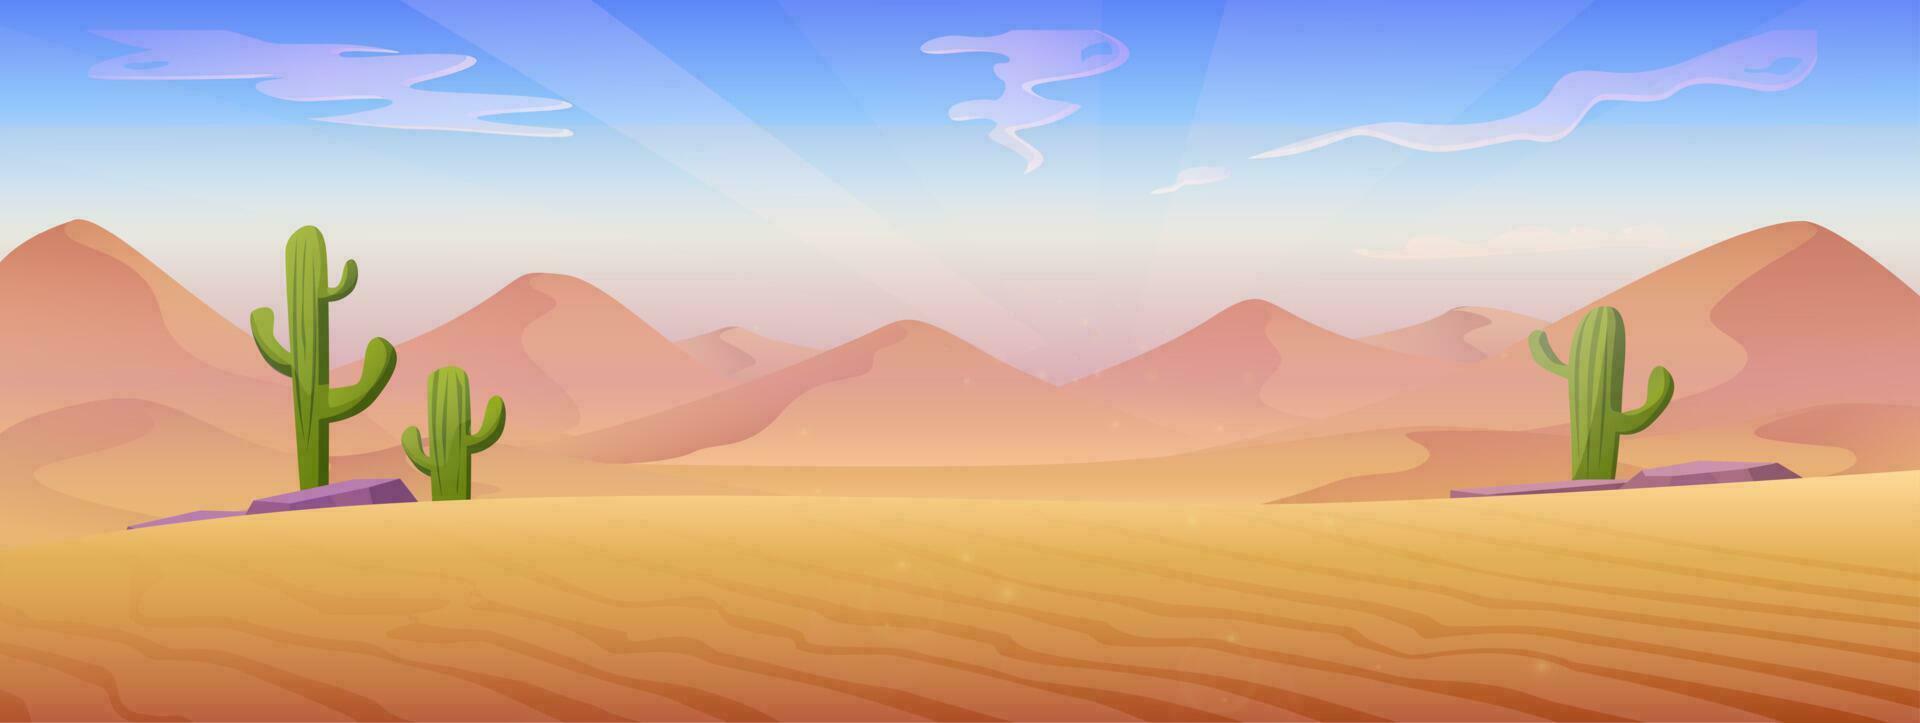 vetor desenho animado estilo ilustração. deserto panorama com areia dunas e pedras com cactos.